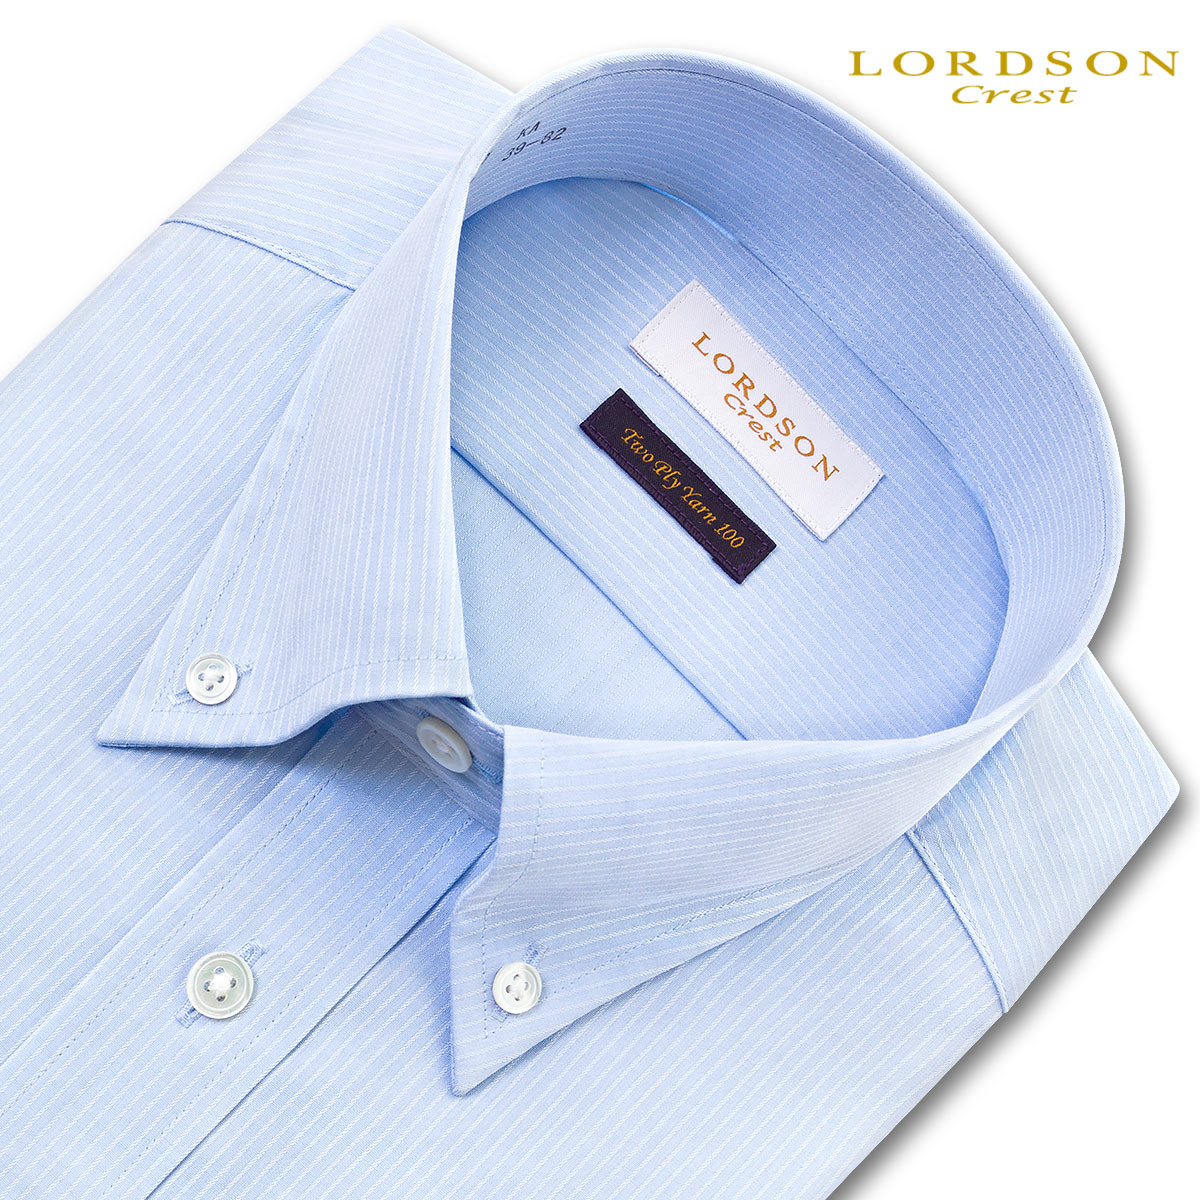 充実の品 品の良さを感じさせるブルーボタンダウンシャツ LORDSON Crest 長袖 ワイシャツ メンズ 形態安定加工 スカイブルー 211089de ドビーピンストライプ SALE 79%OFF ボタンダウンカラー 綿：100% スリムフィット